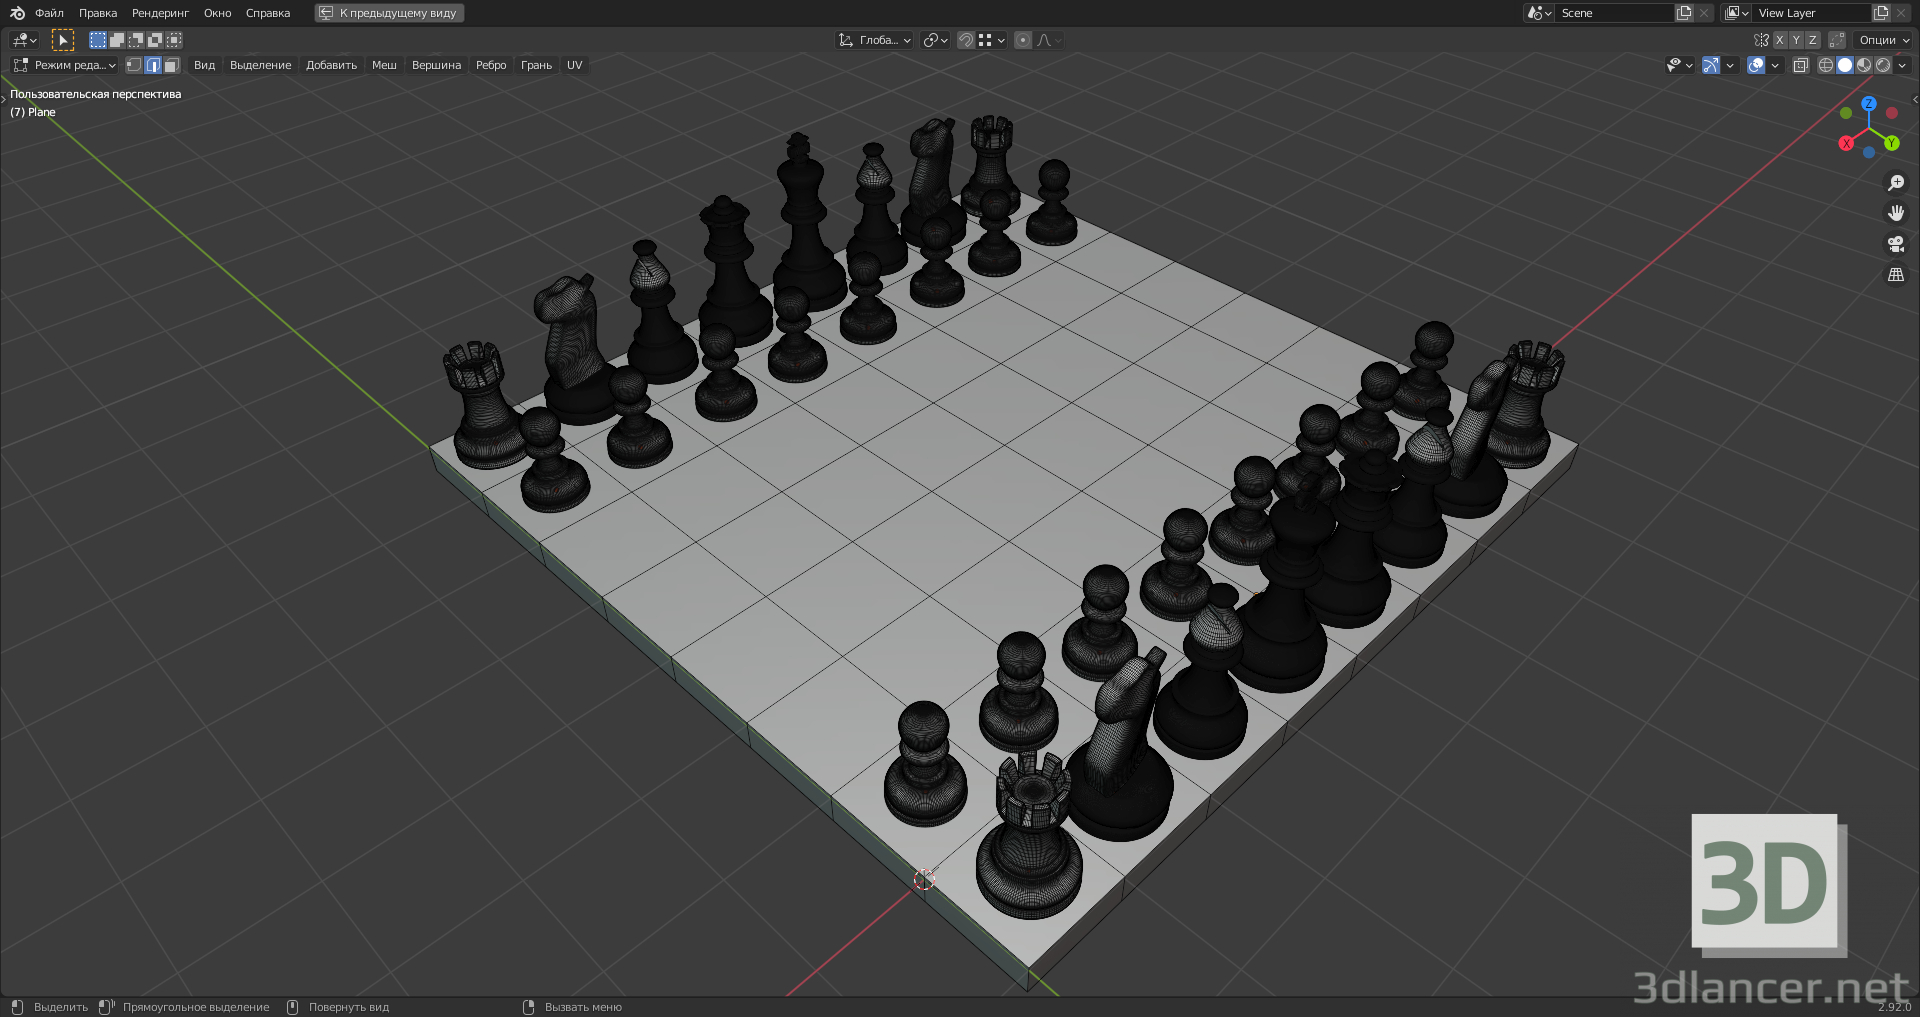 modèle 3D de échecs échecs acheter - rendu